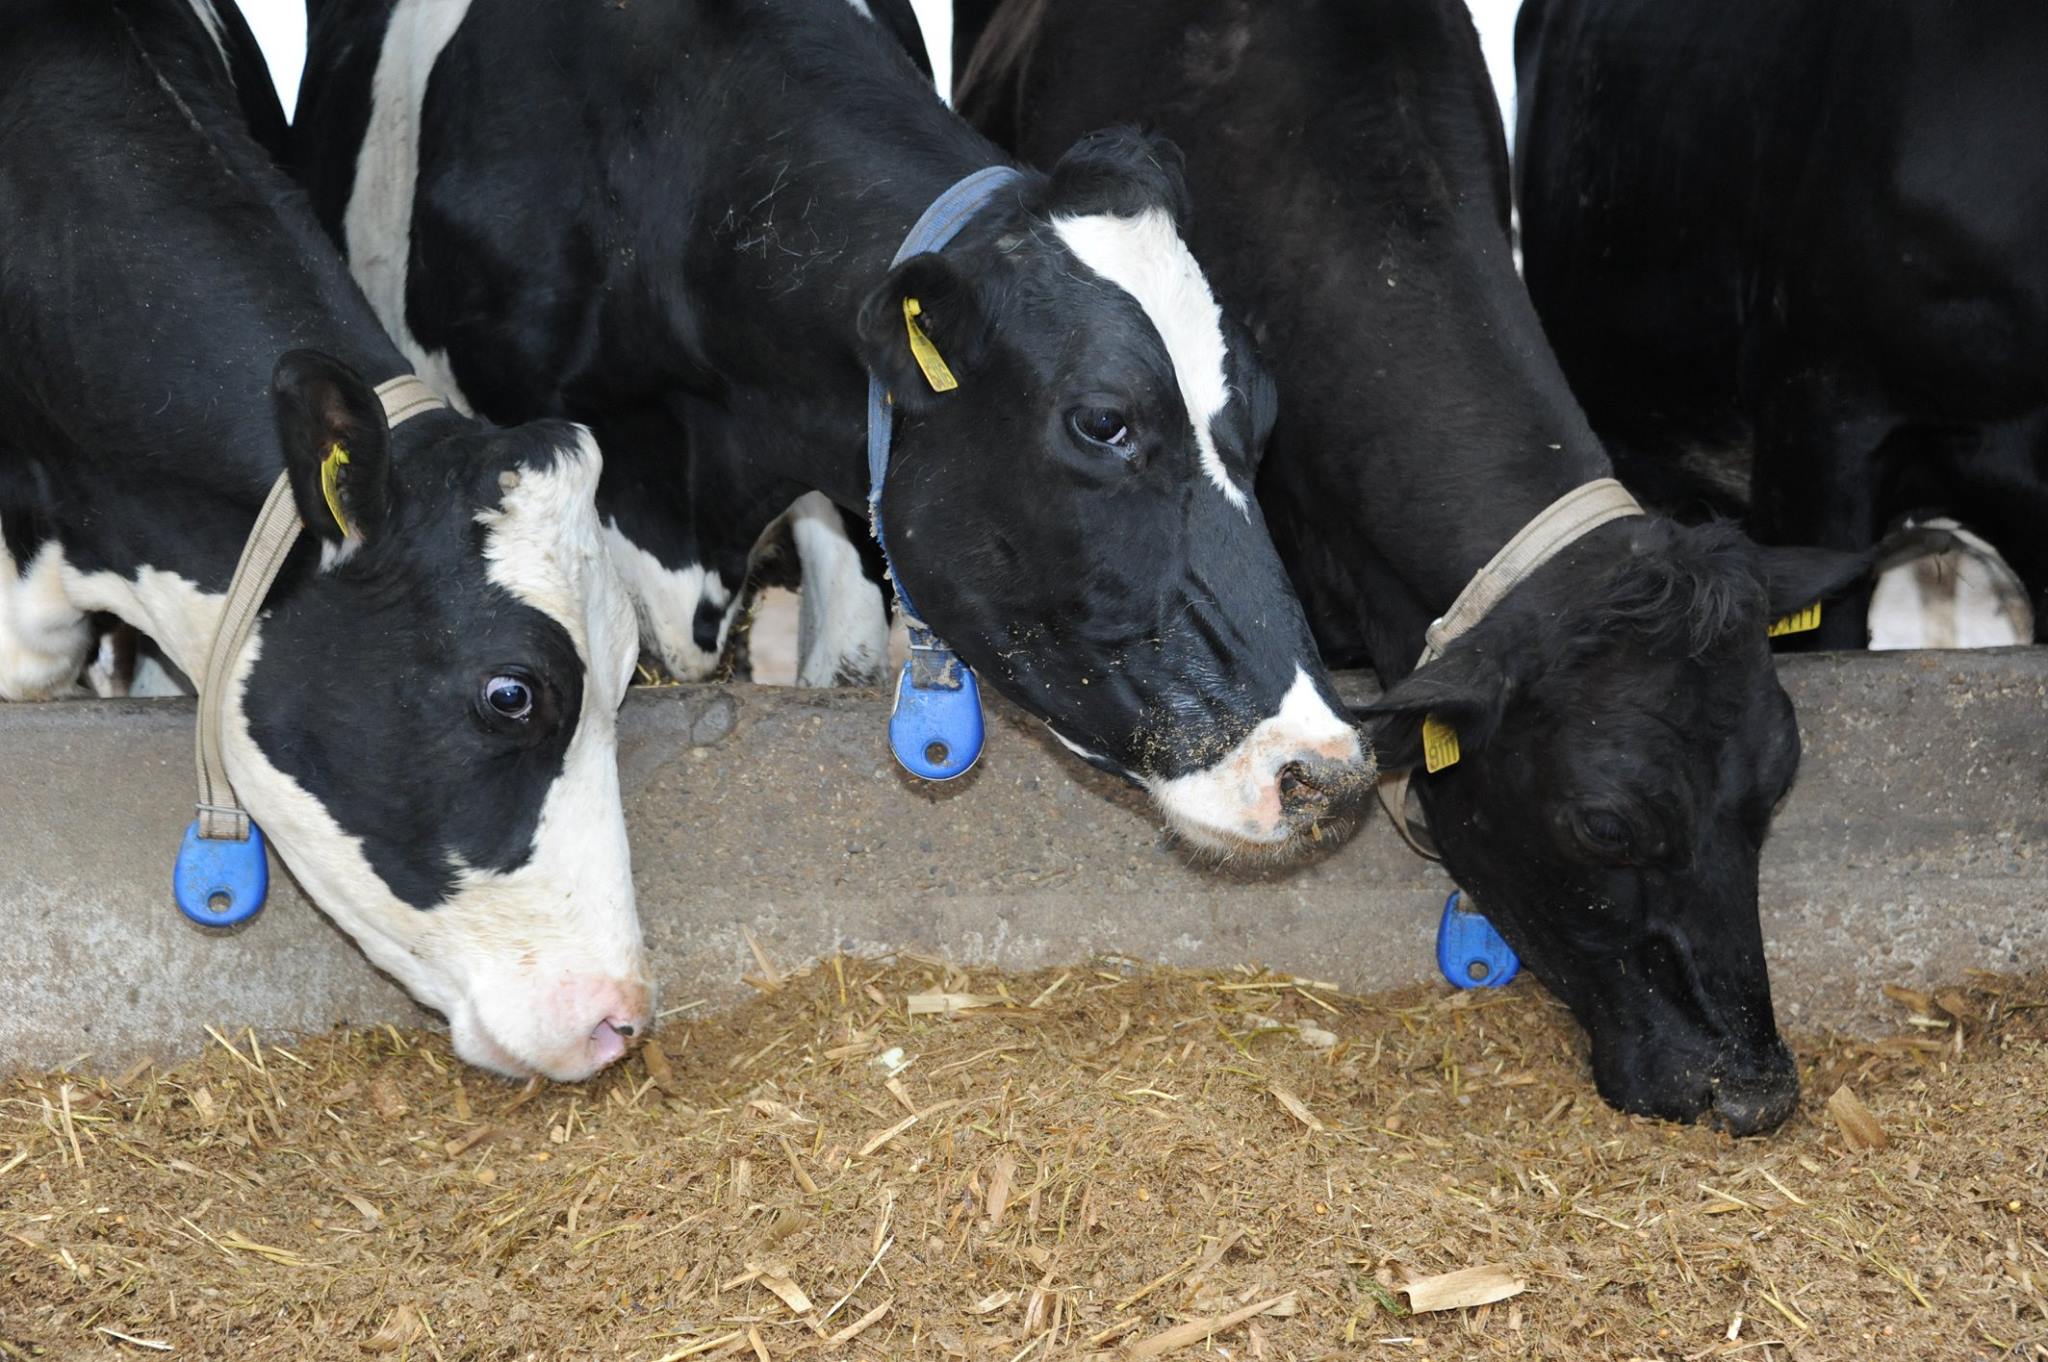 Petre Daea nu vrea să audă de reducerea drastică a efectivelor de bovine, așa cum cere UE